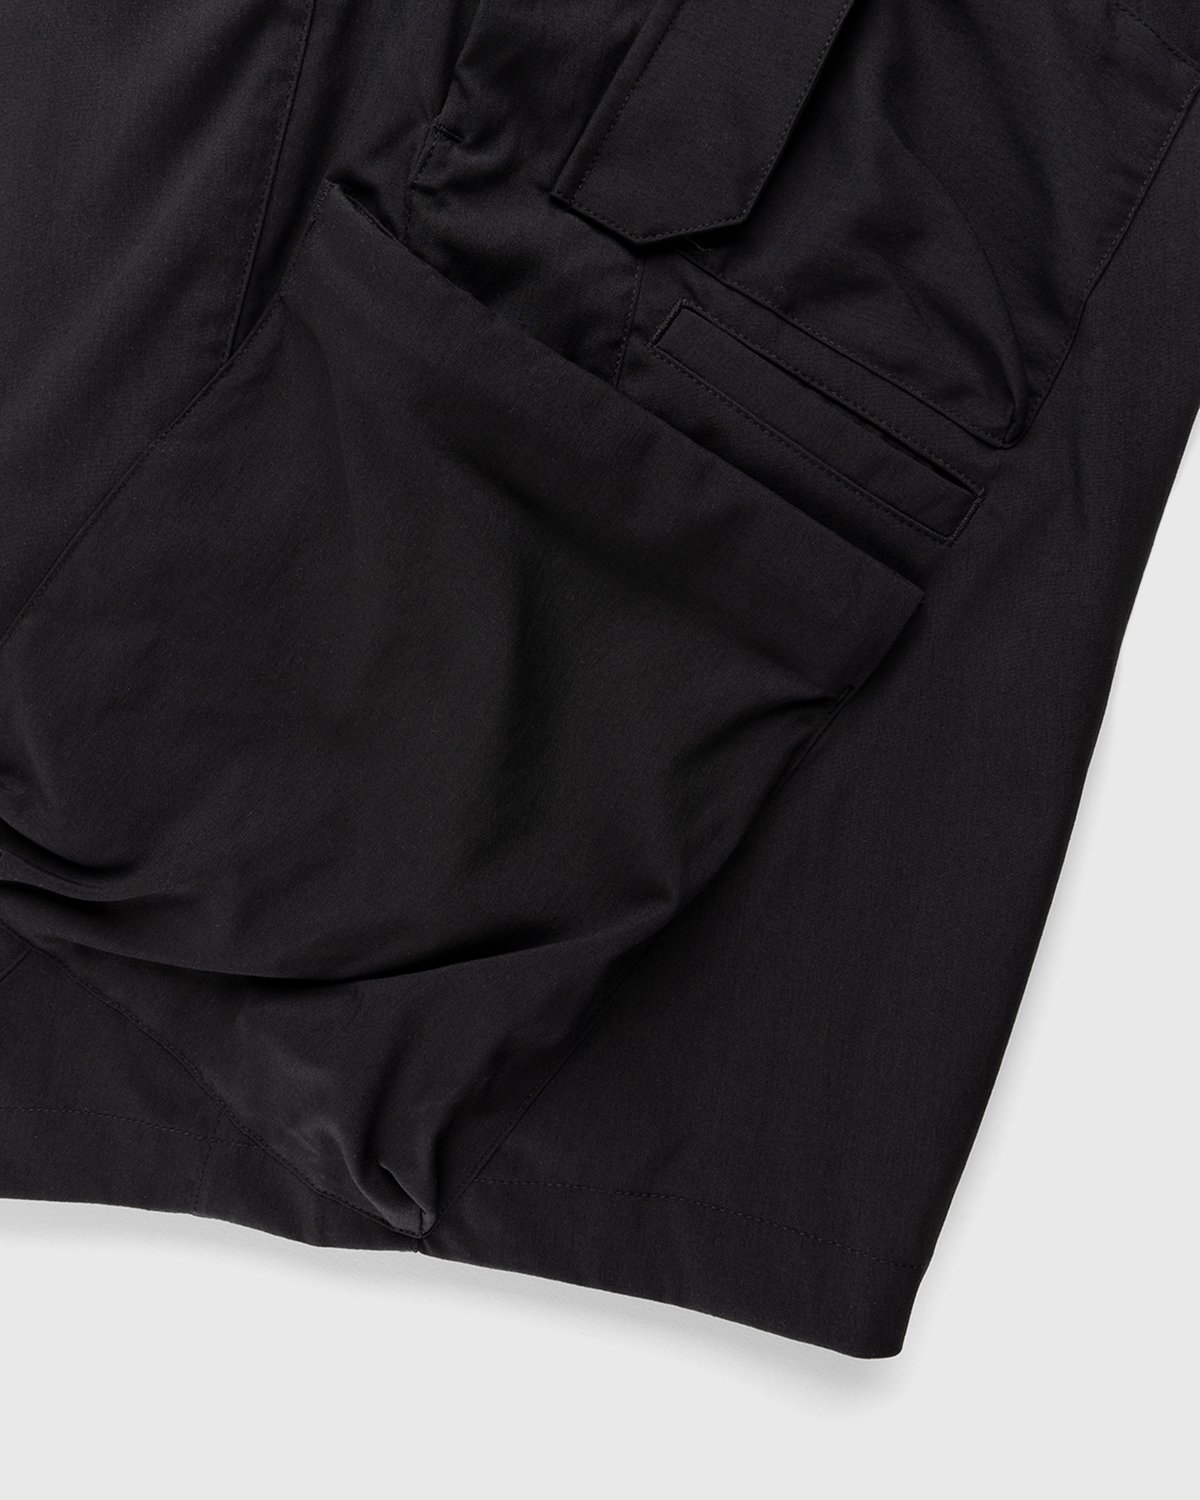 ACRONYM – SP29-M Cargo Shorts Black | Highsnobiety Shop